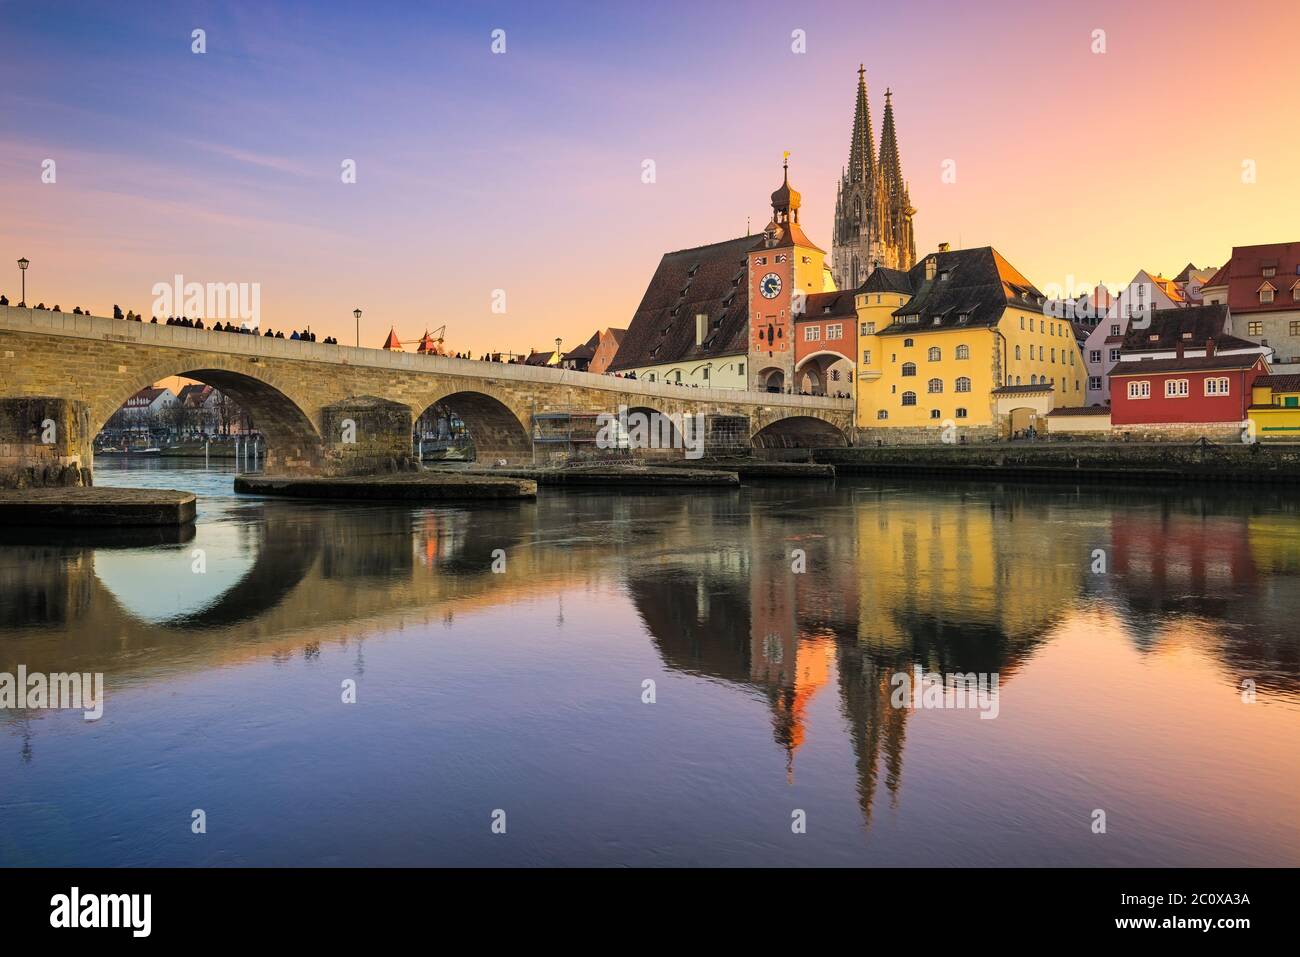 La ciudad vieja de Regensburg, Alemania al atardecer Foto de stock